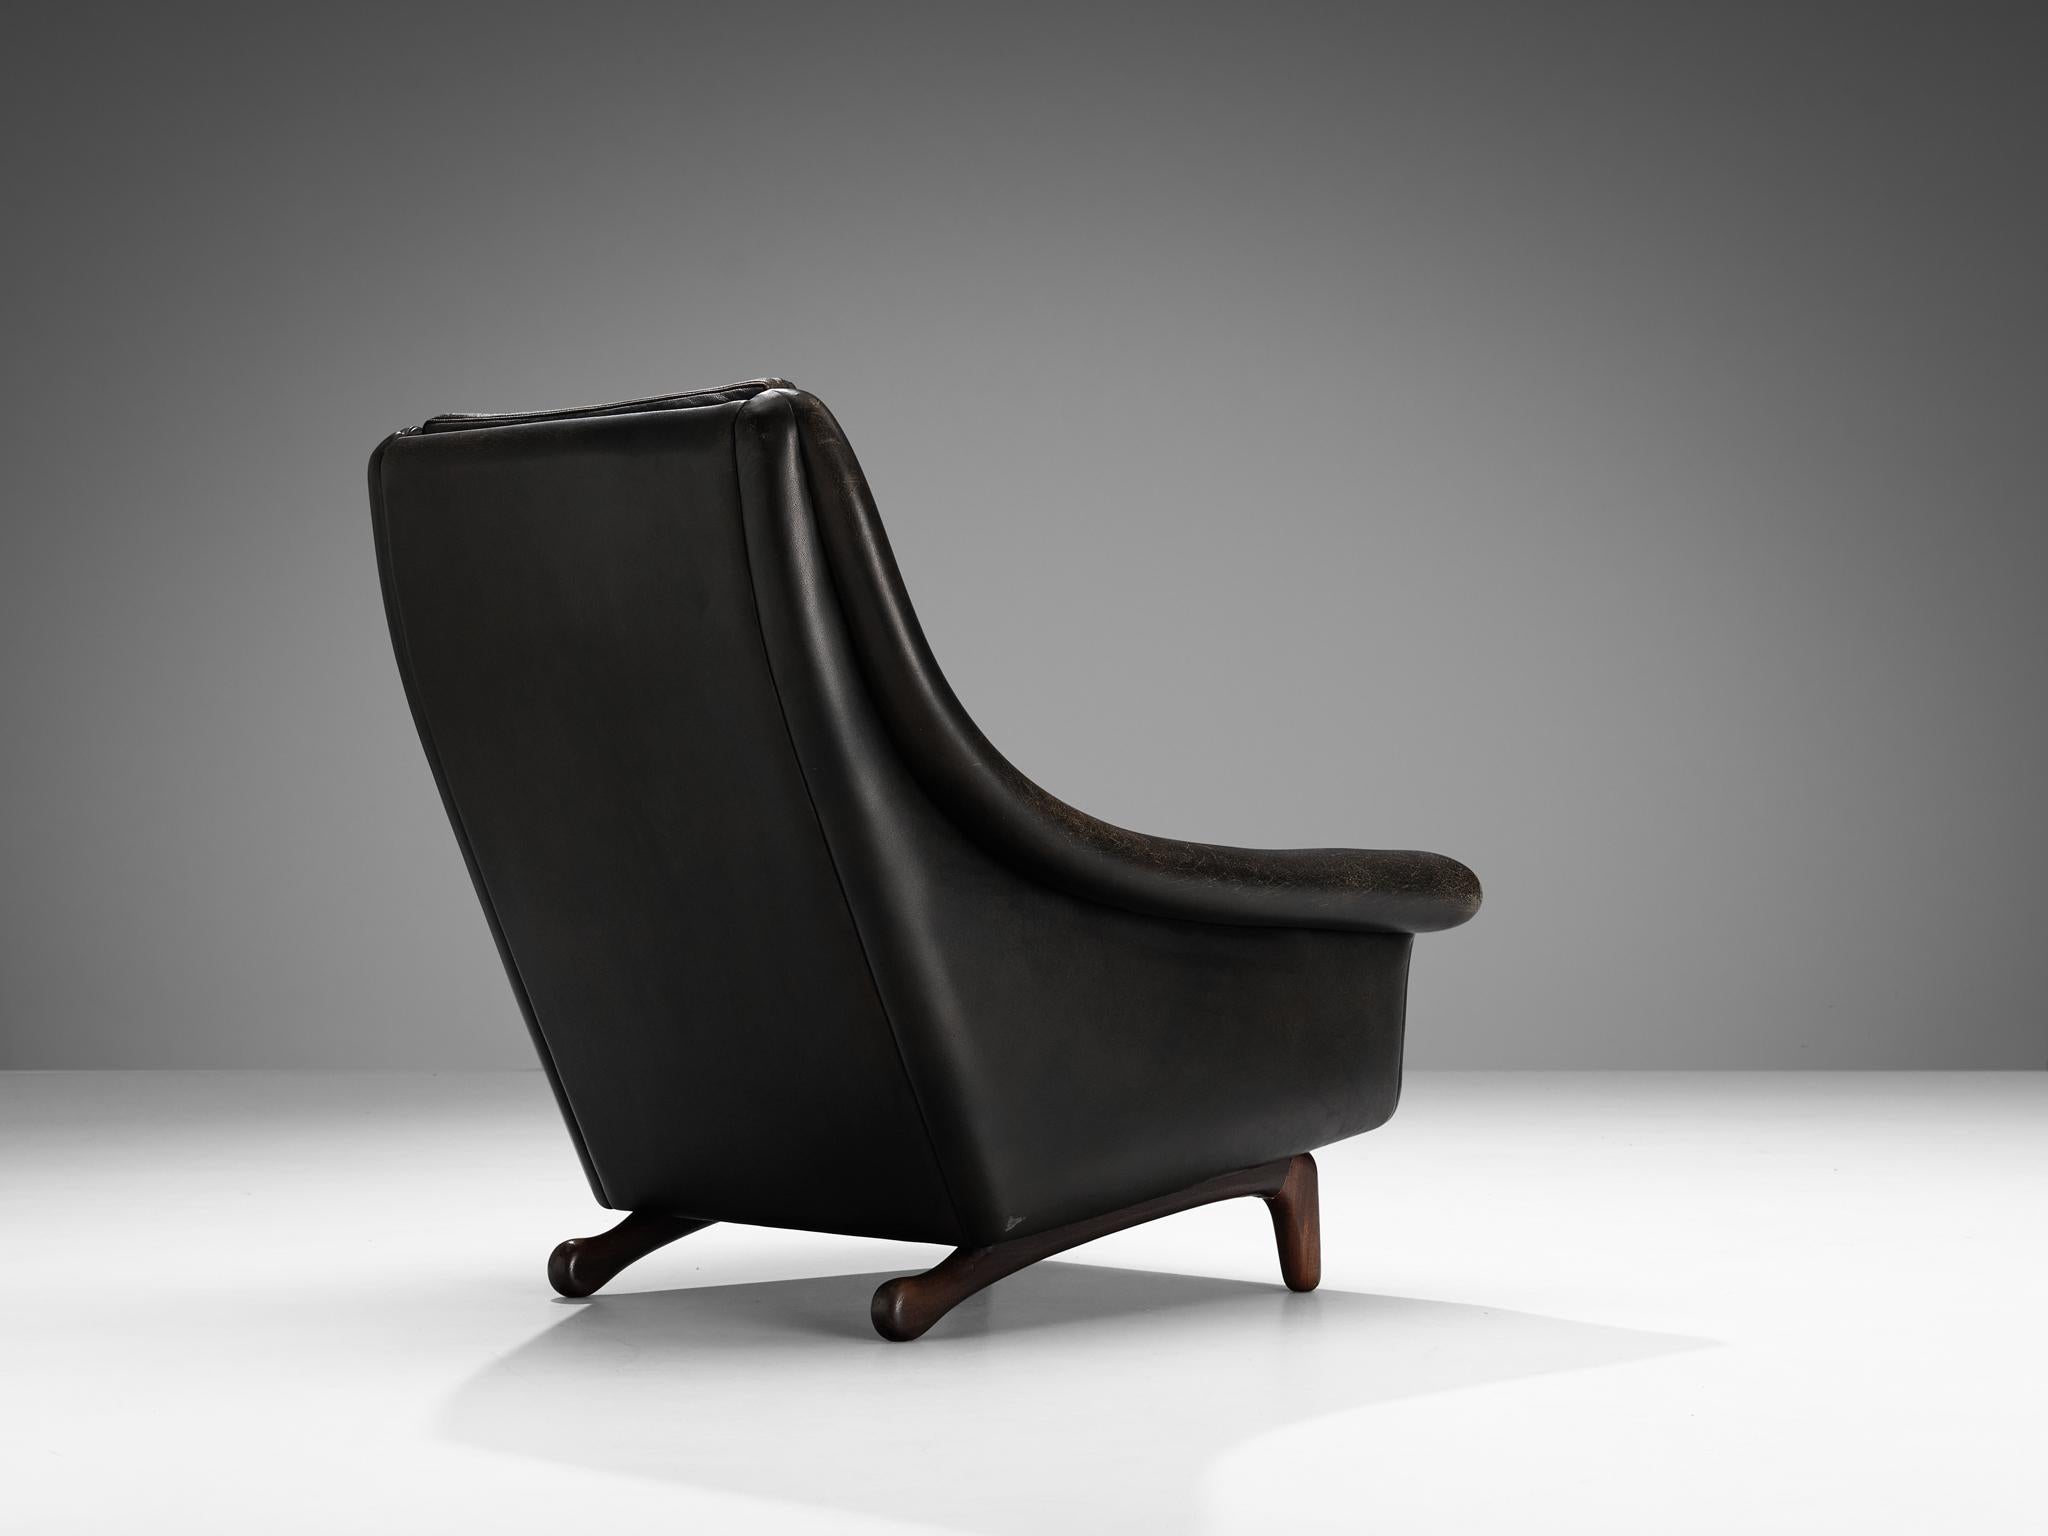 Fauteuil, cuir noir, teck Danemark, années 1960

Ce fauteuil aux formes organiques est doté d'une base modeste qui est sculpturale et fabriquée de manière exquise. Les pieds forment une excellente combinaison avec la forme courbée et fluide de la